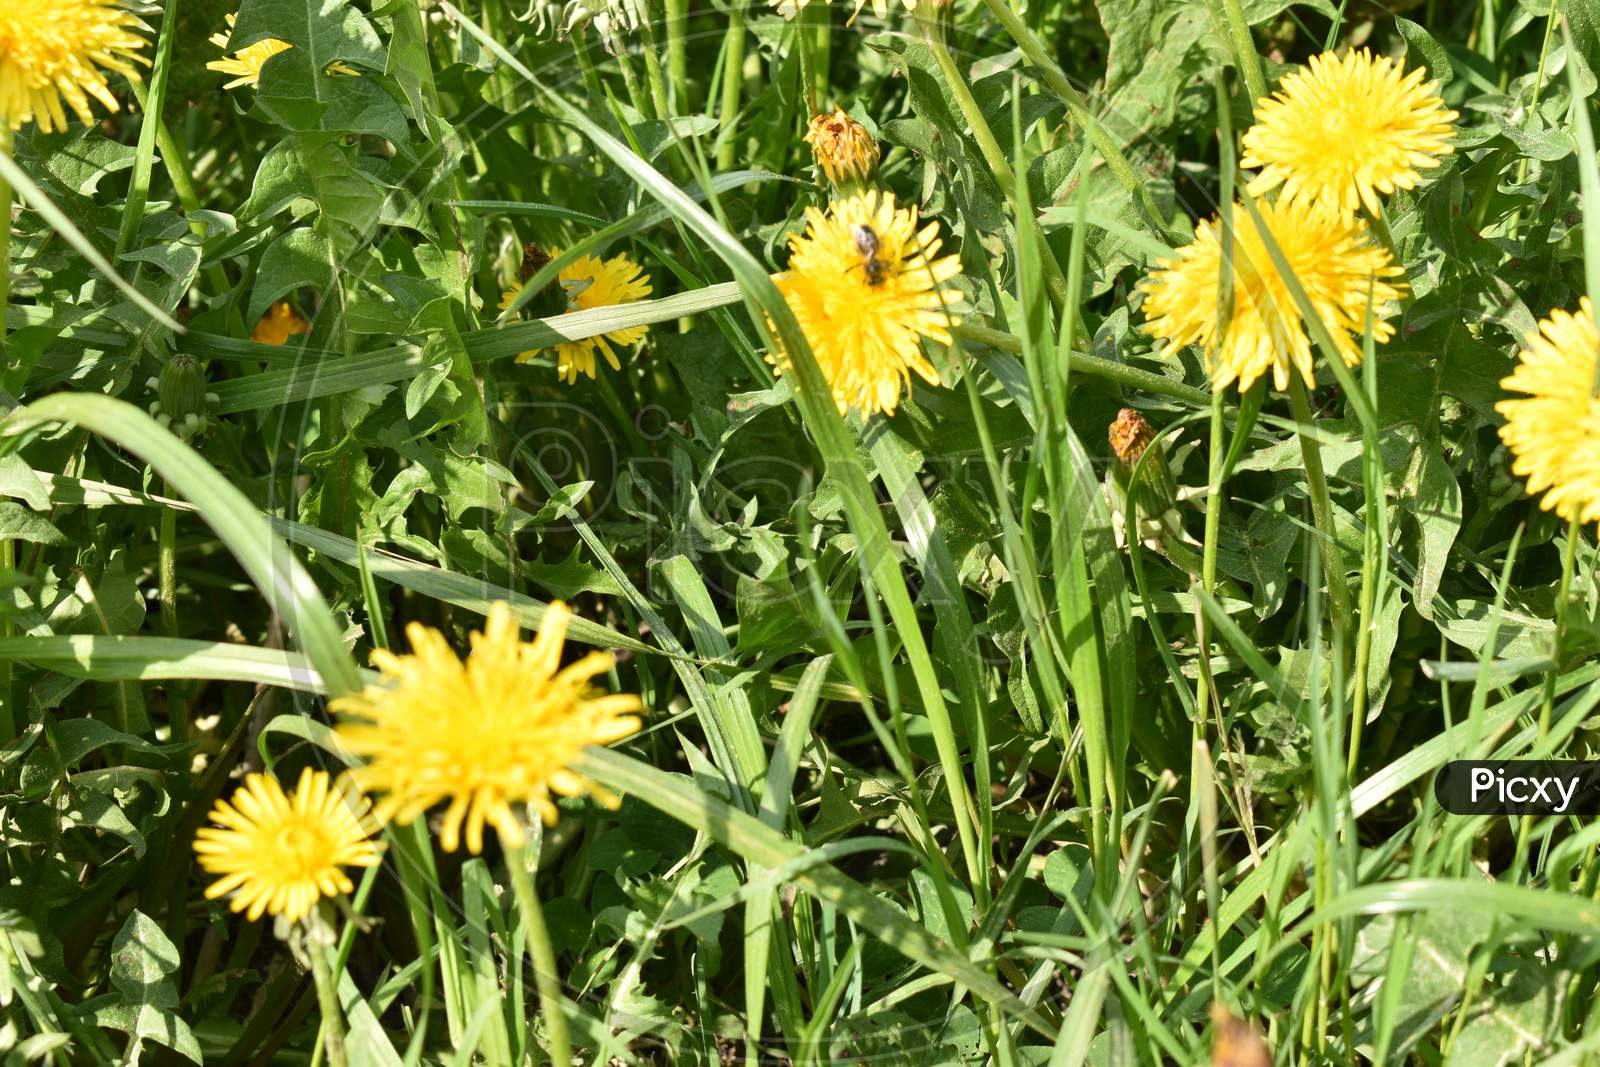 Yellow dandelion in a green field